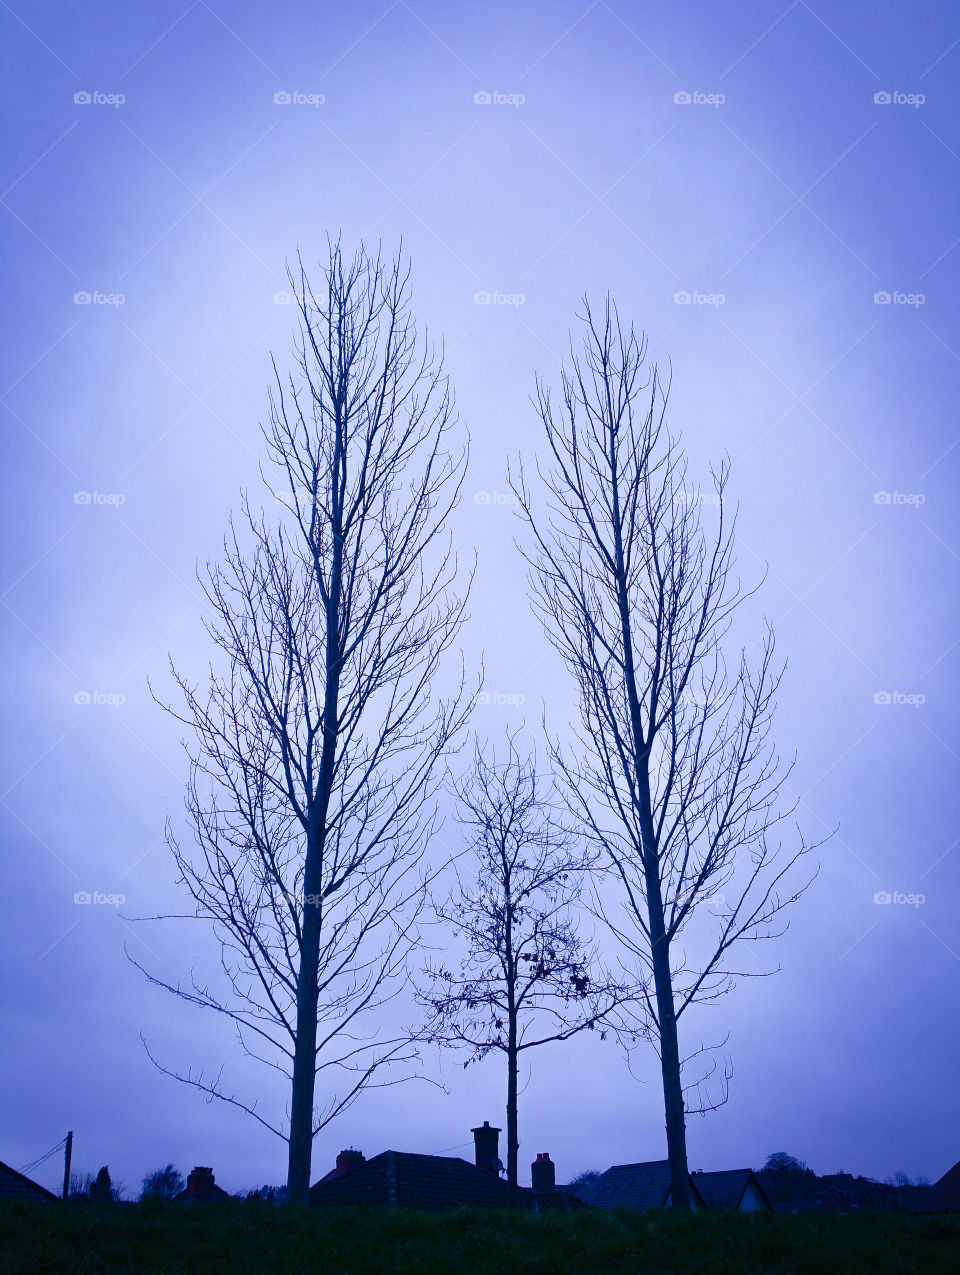 Three leafless trees